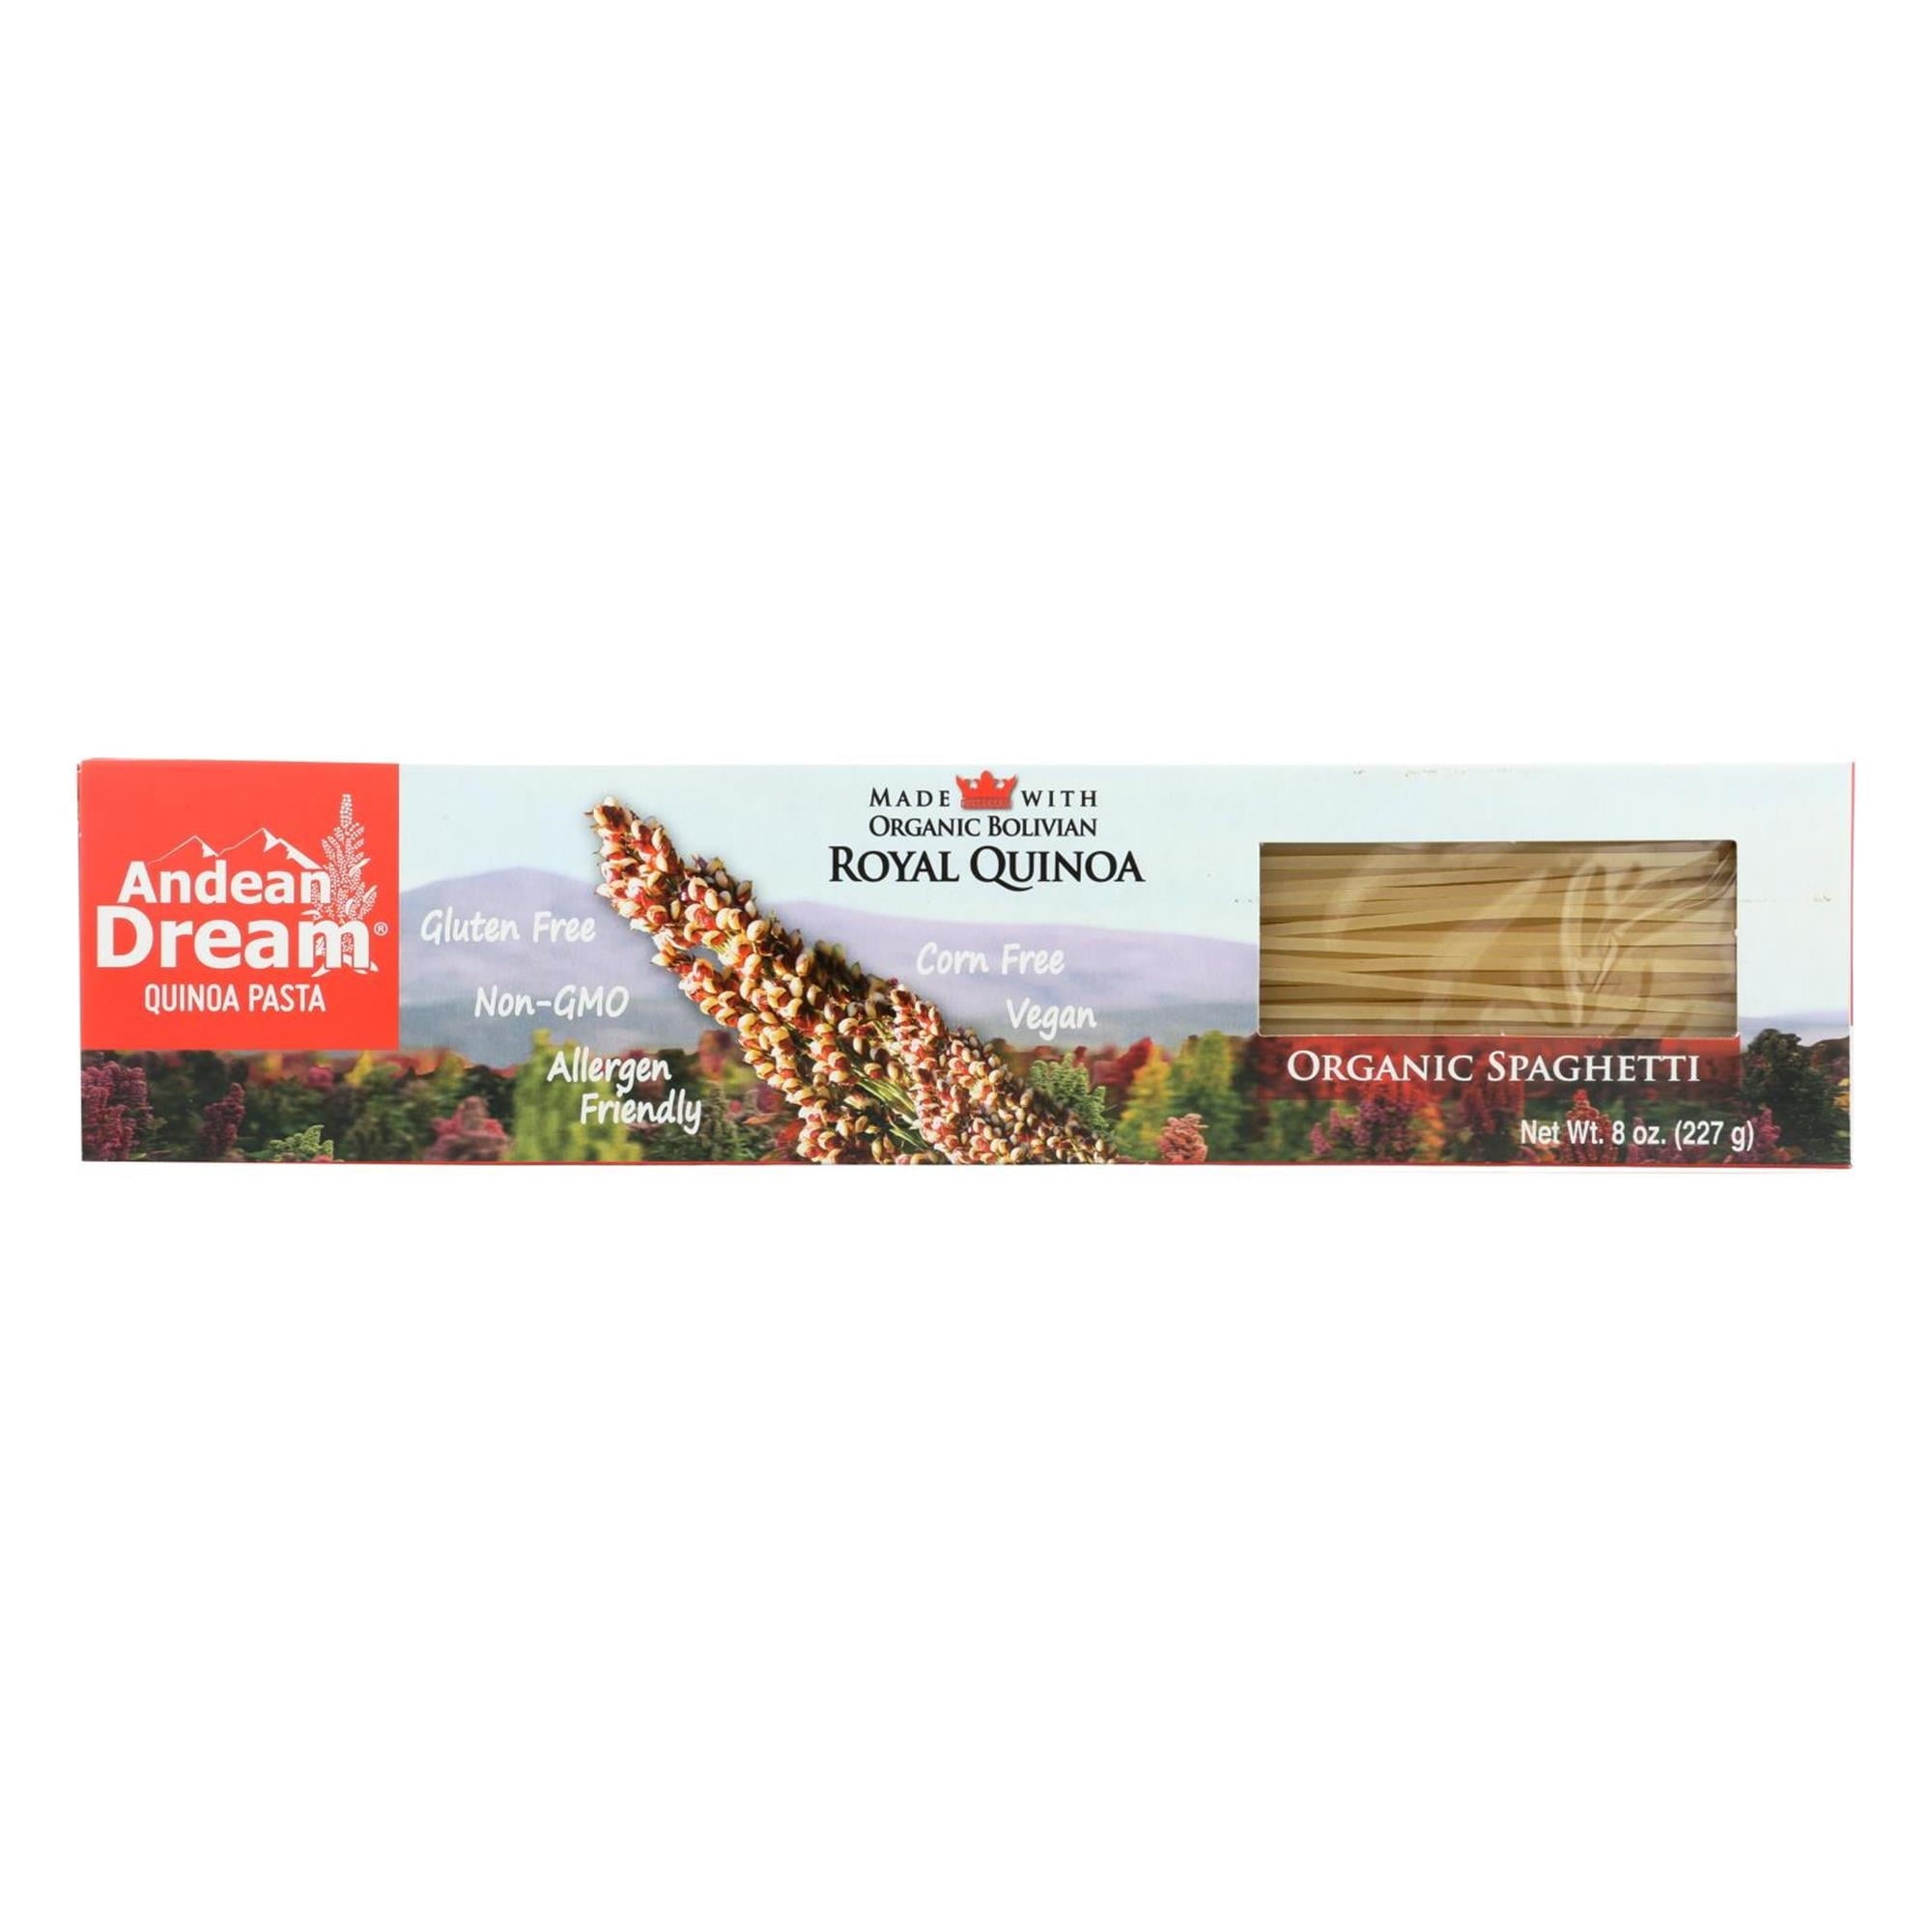 Andean Dream Quinoa Pasta Organic Spaghetti 8 oz Box